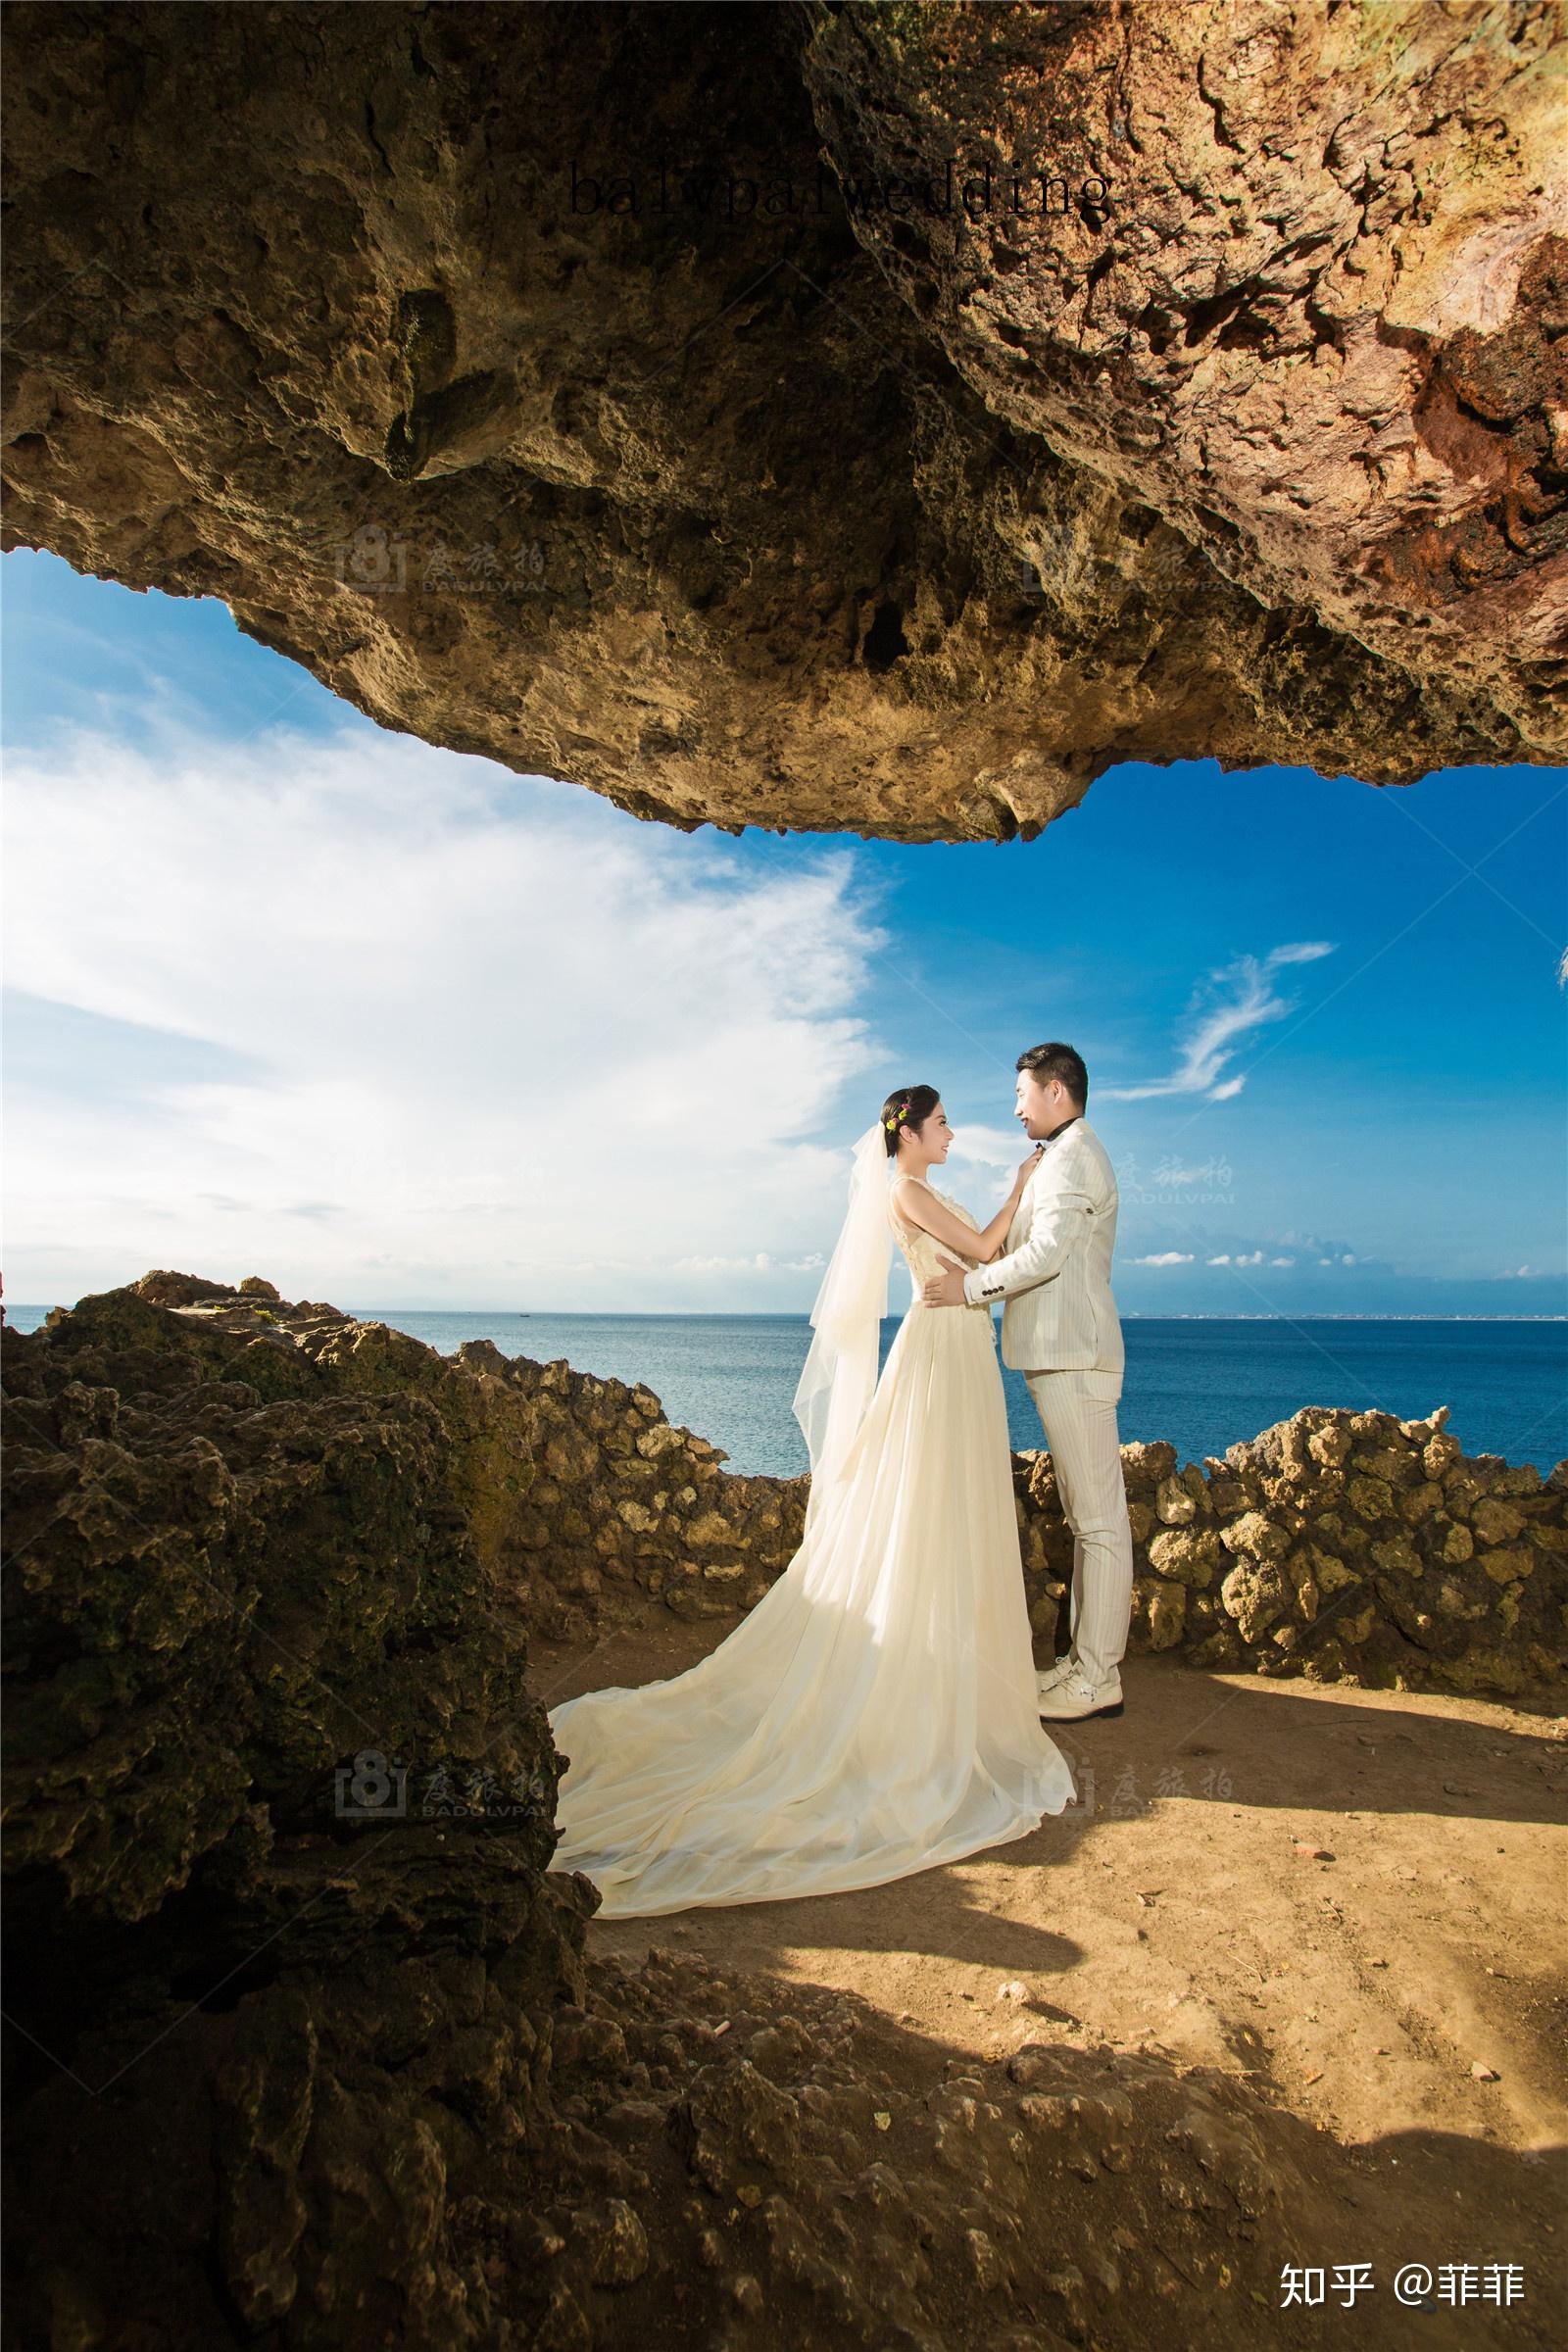 巴厘岛——碧海蓝天下的婚纱照之旅-巴厘岛旅游攻略-游记-去哪儿攻略